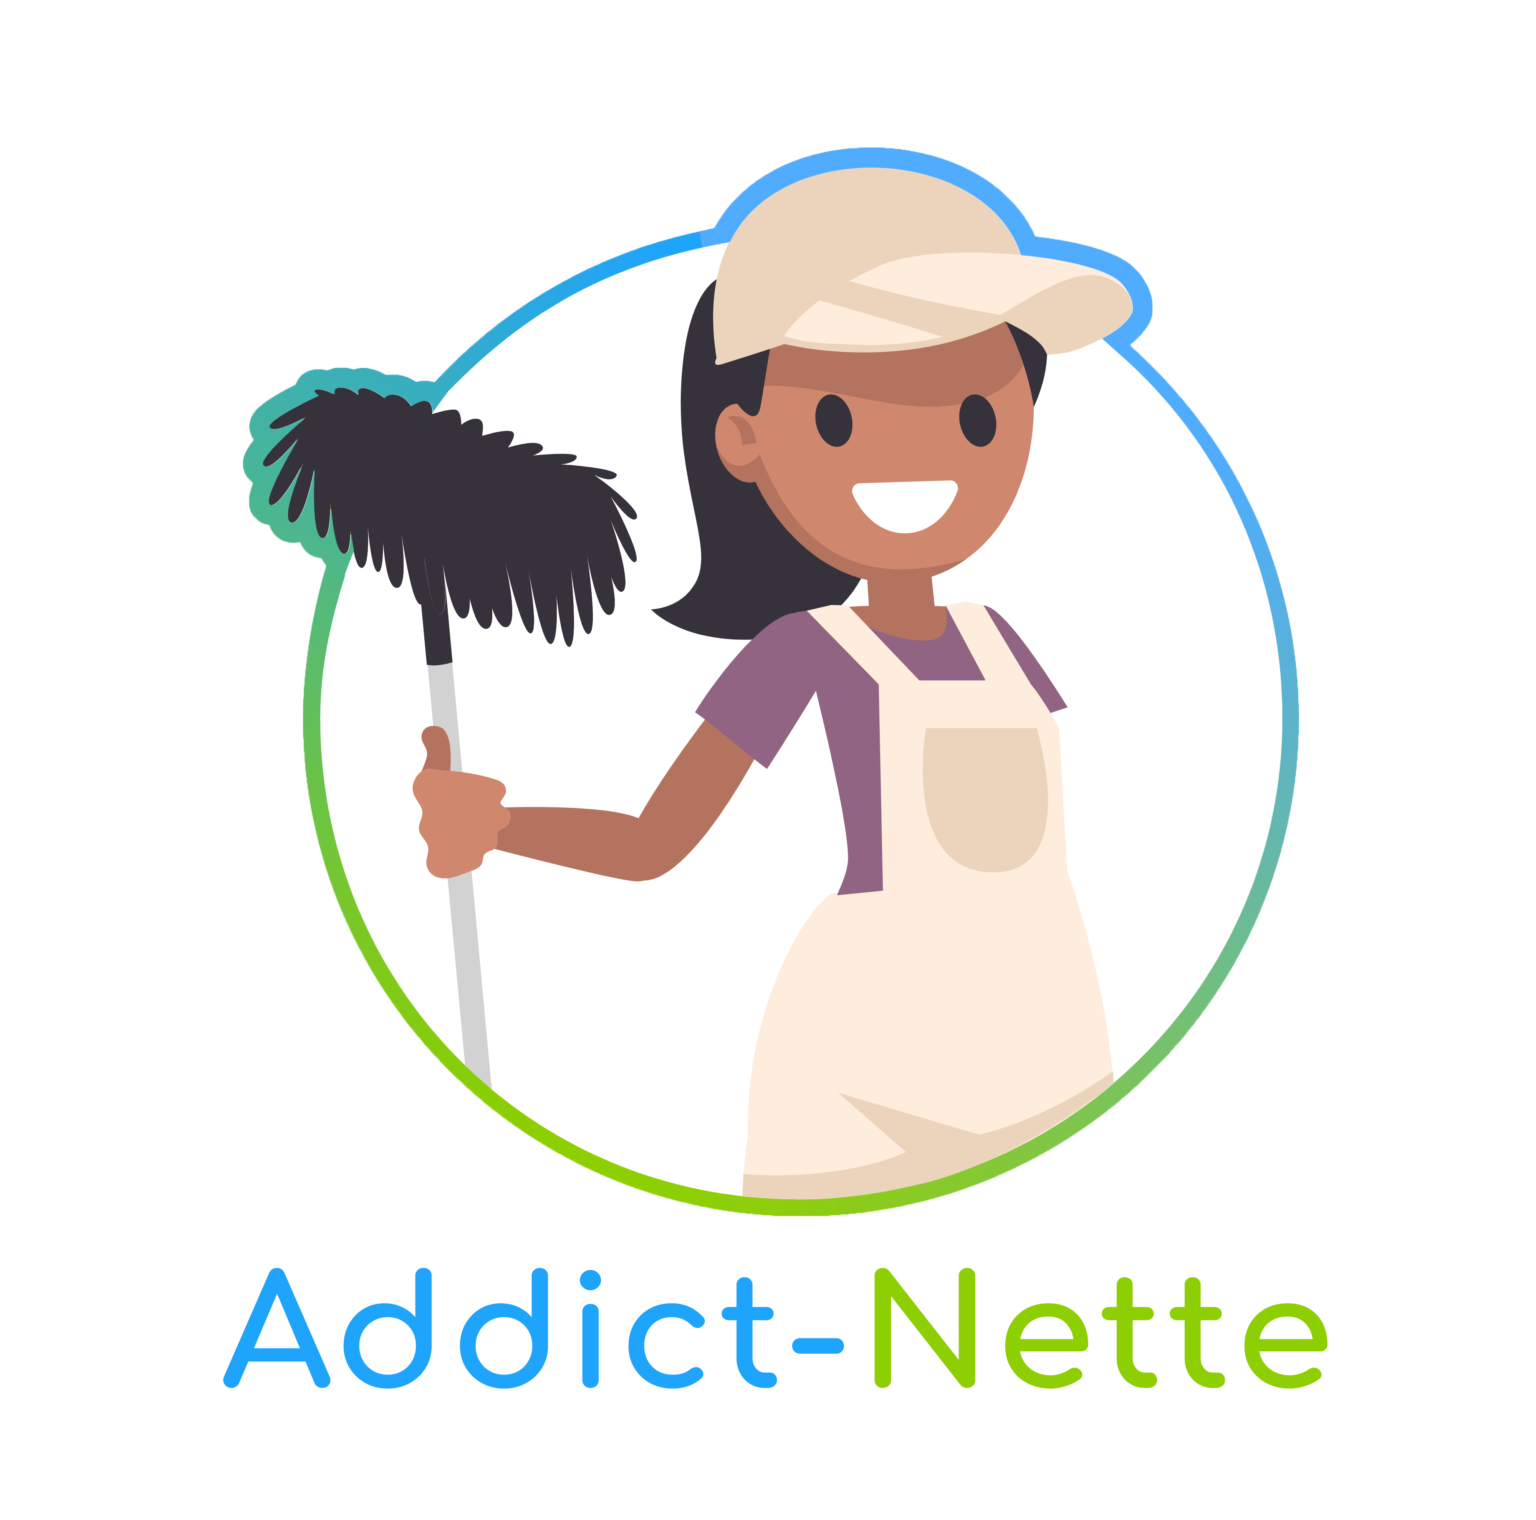 Addict-Nette